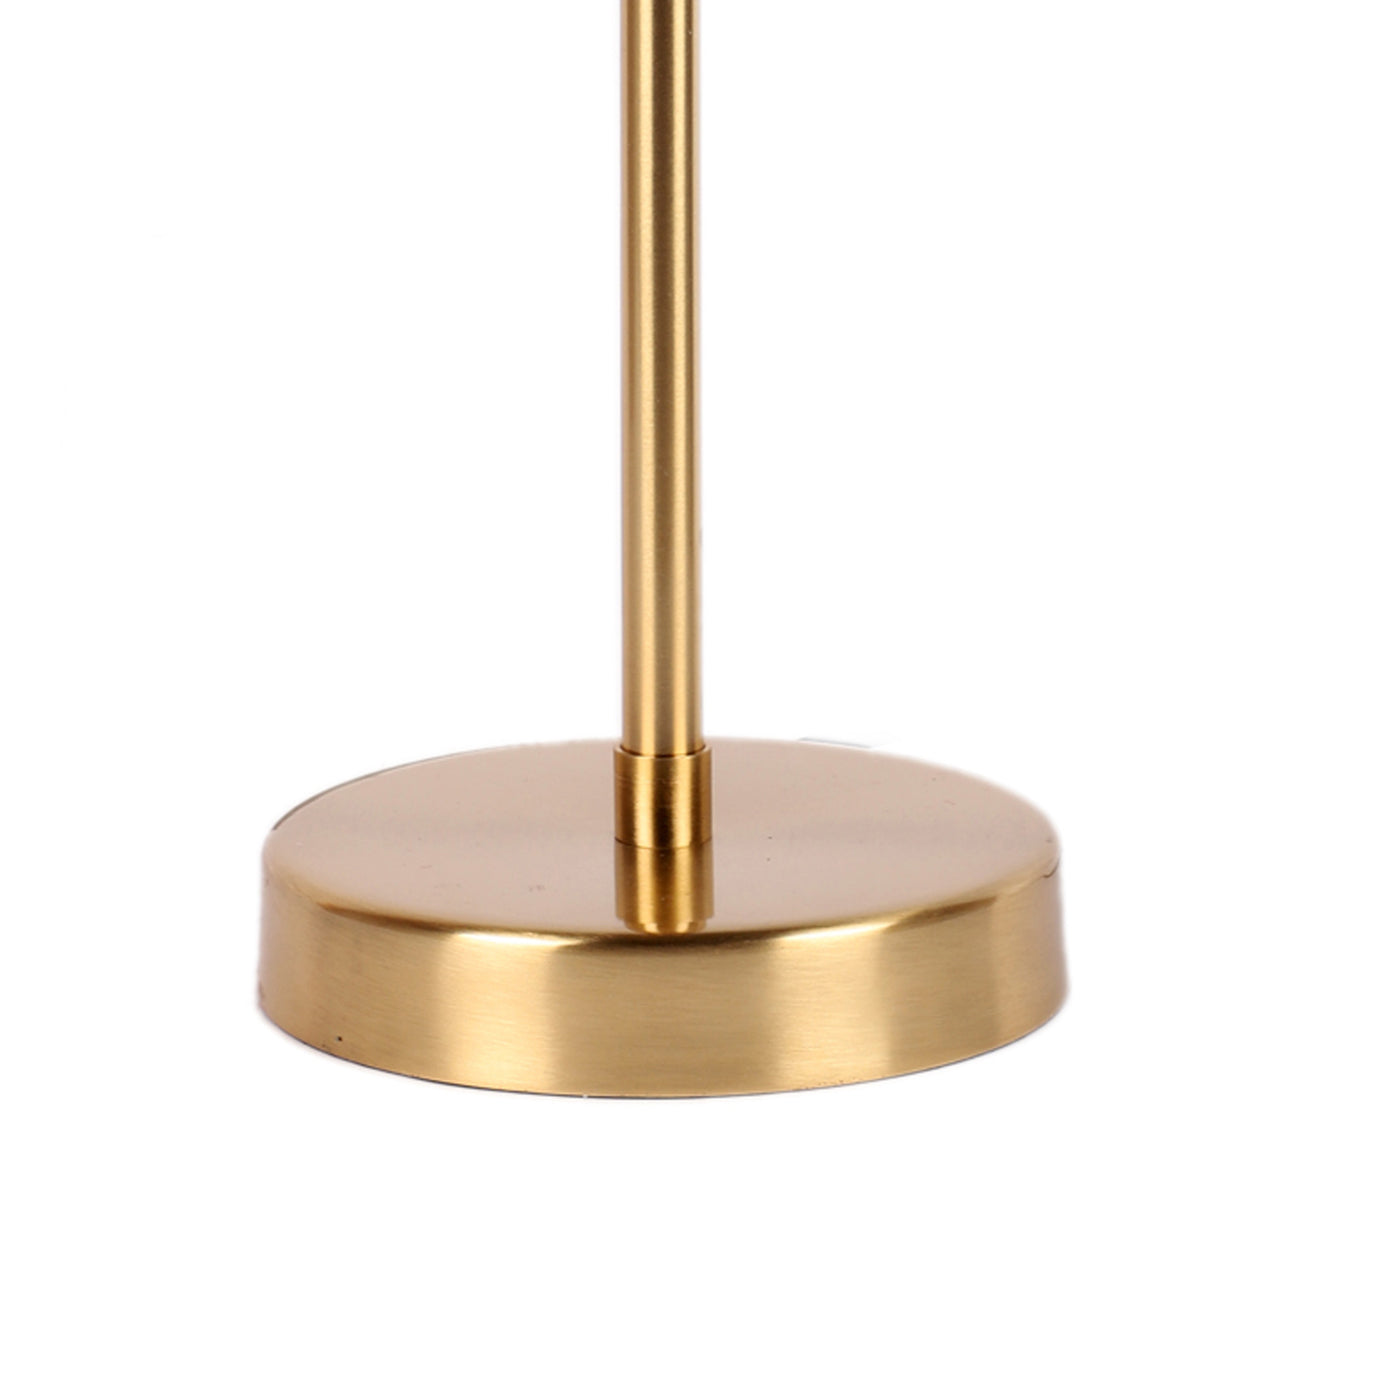 The "Imprisoned Bulb Lamp" black and gold Matt Brass finish table lamp